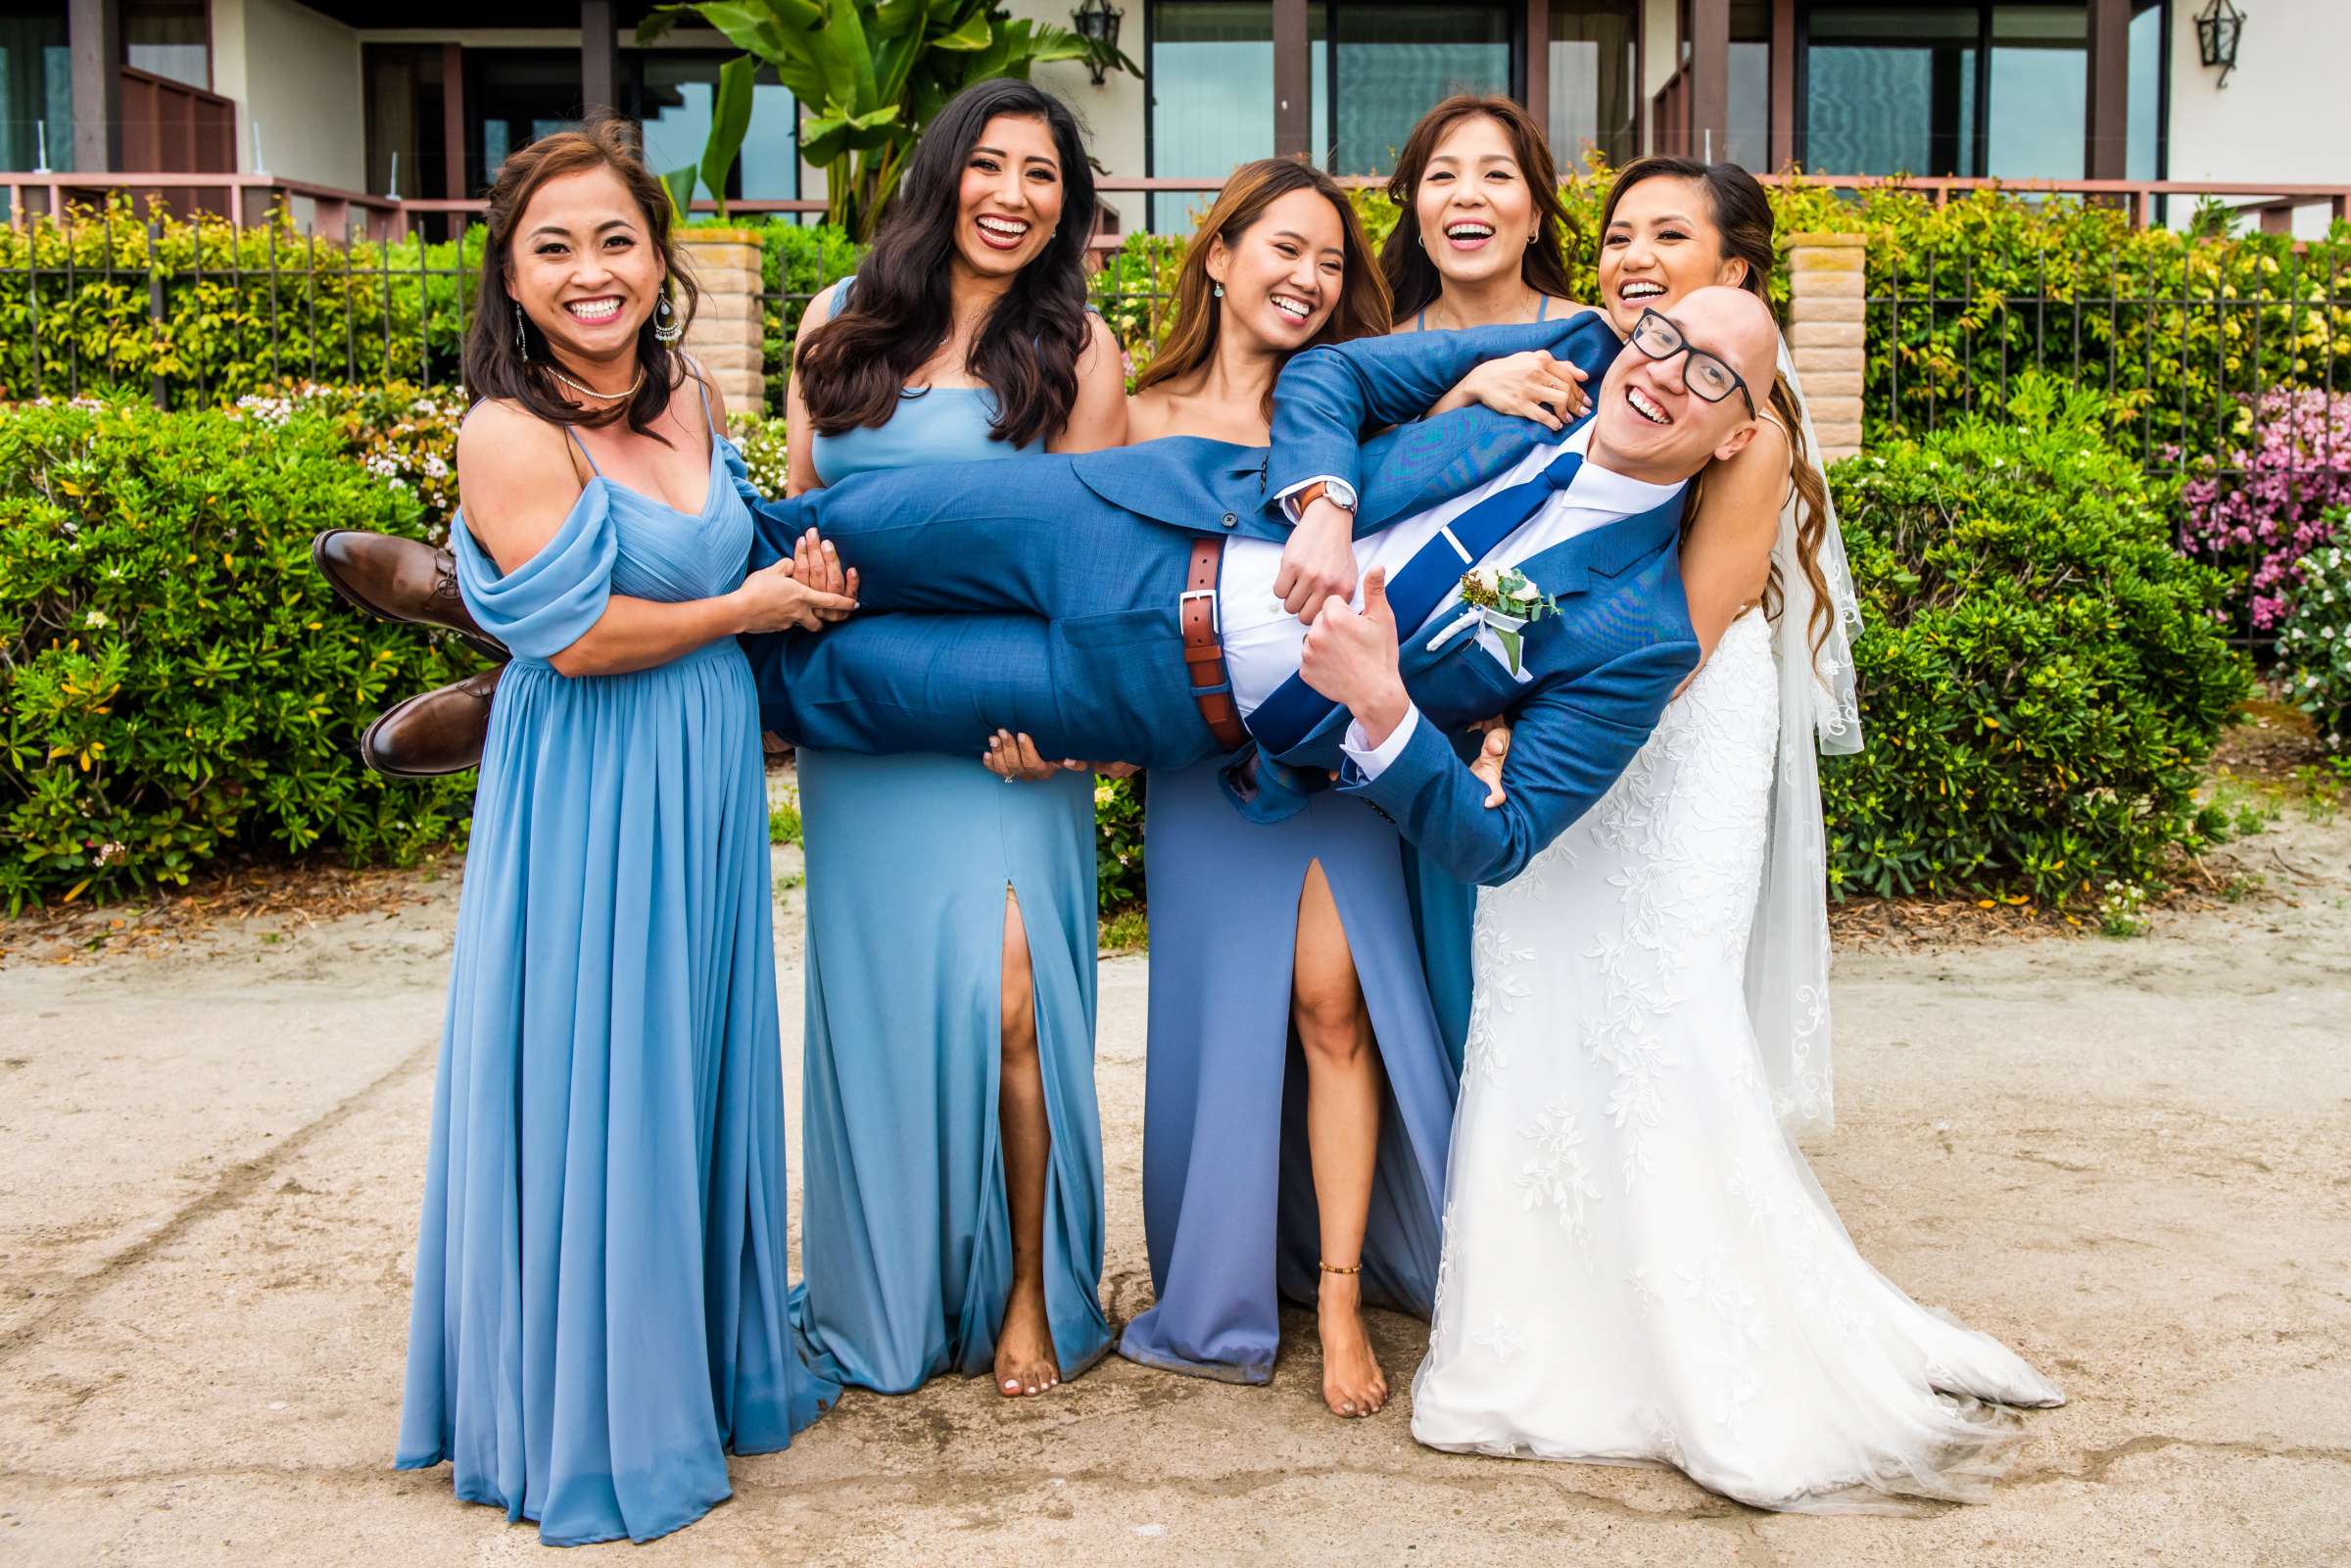 La Jolla Shores Hotel Wedding, Kim and Evan Wedding Photo #19 by True Photography